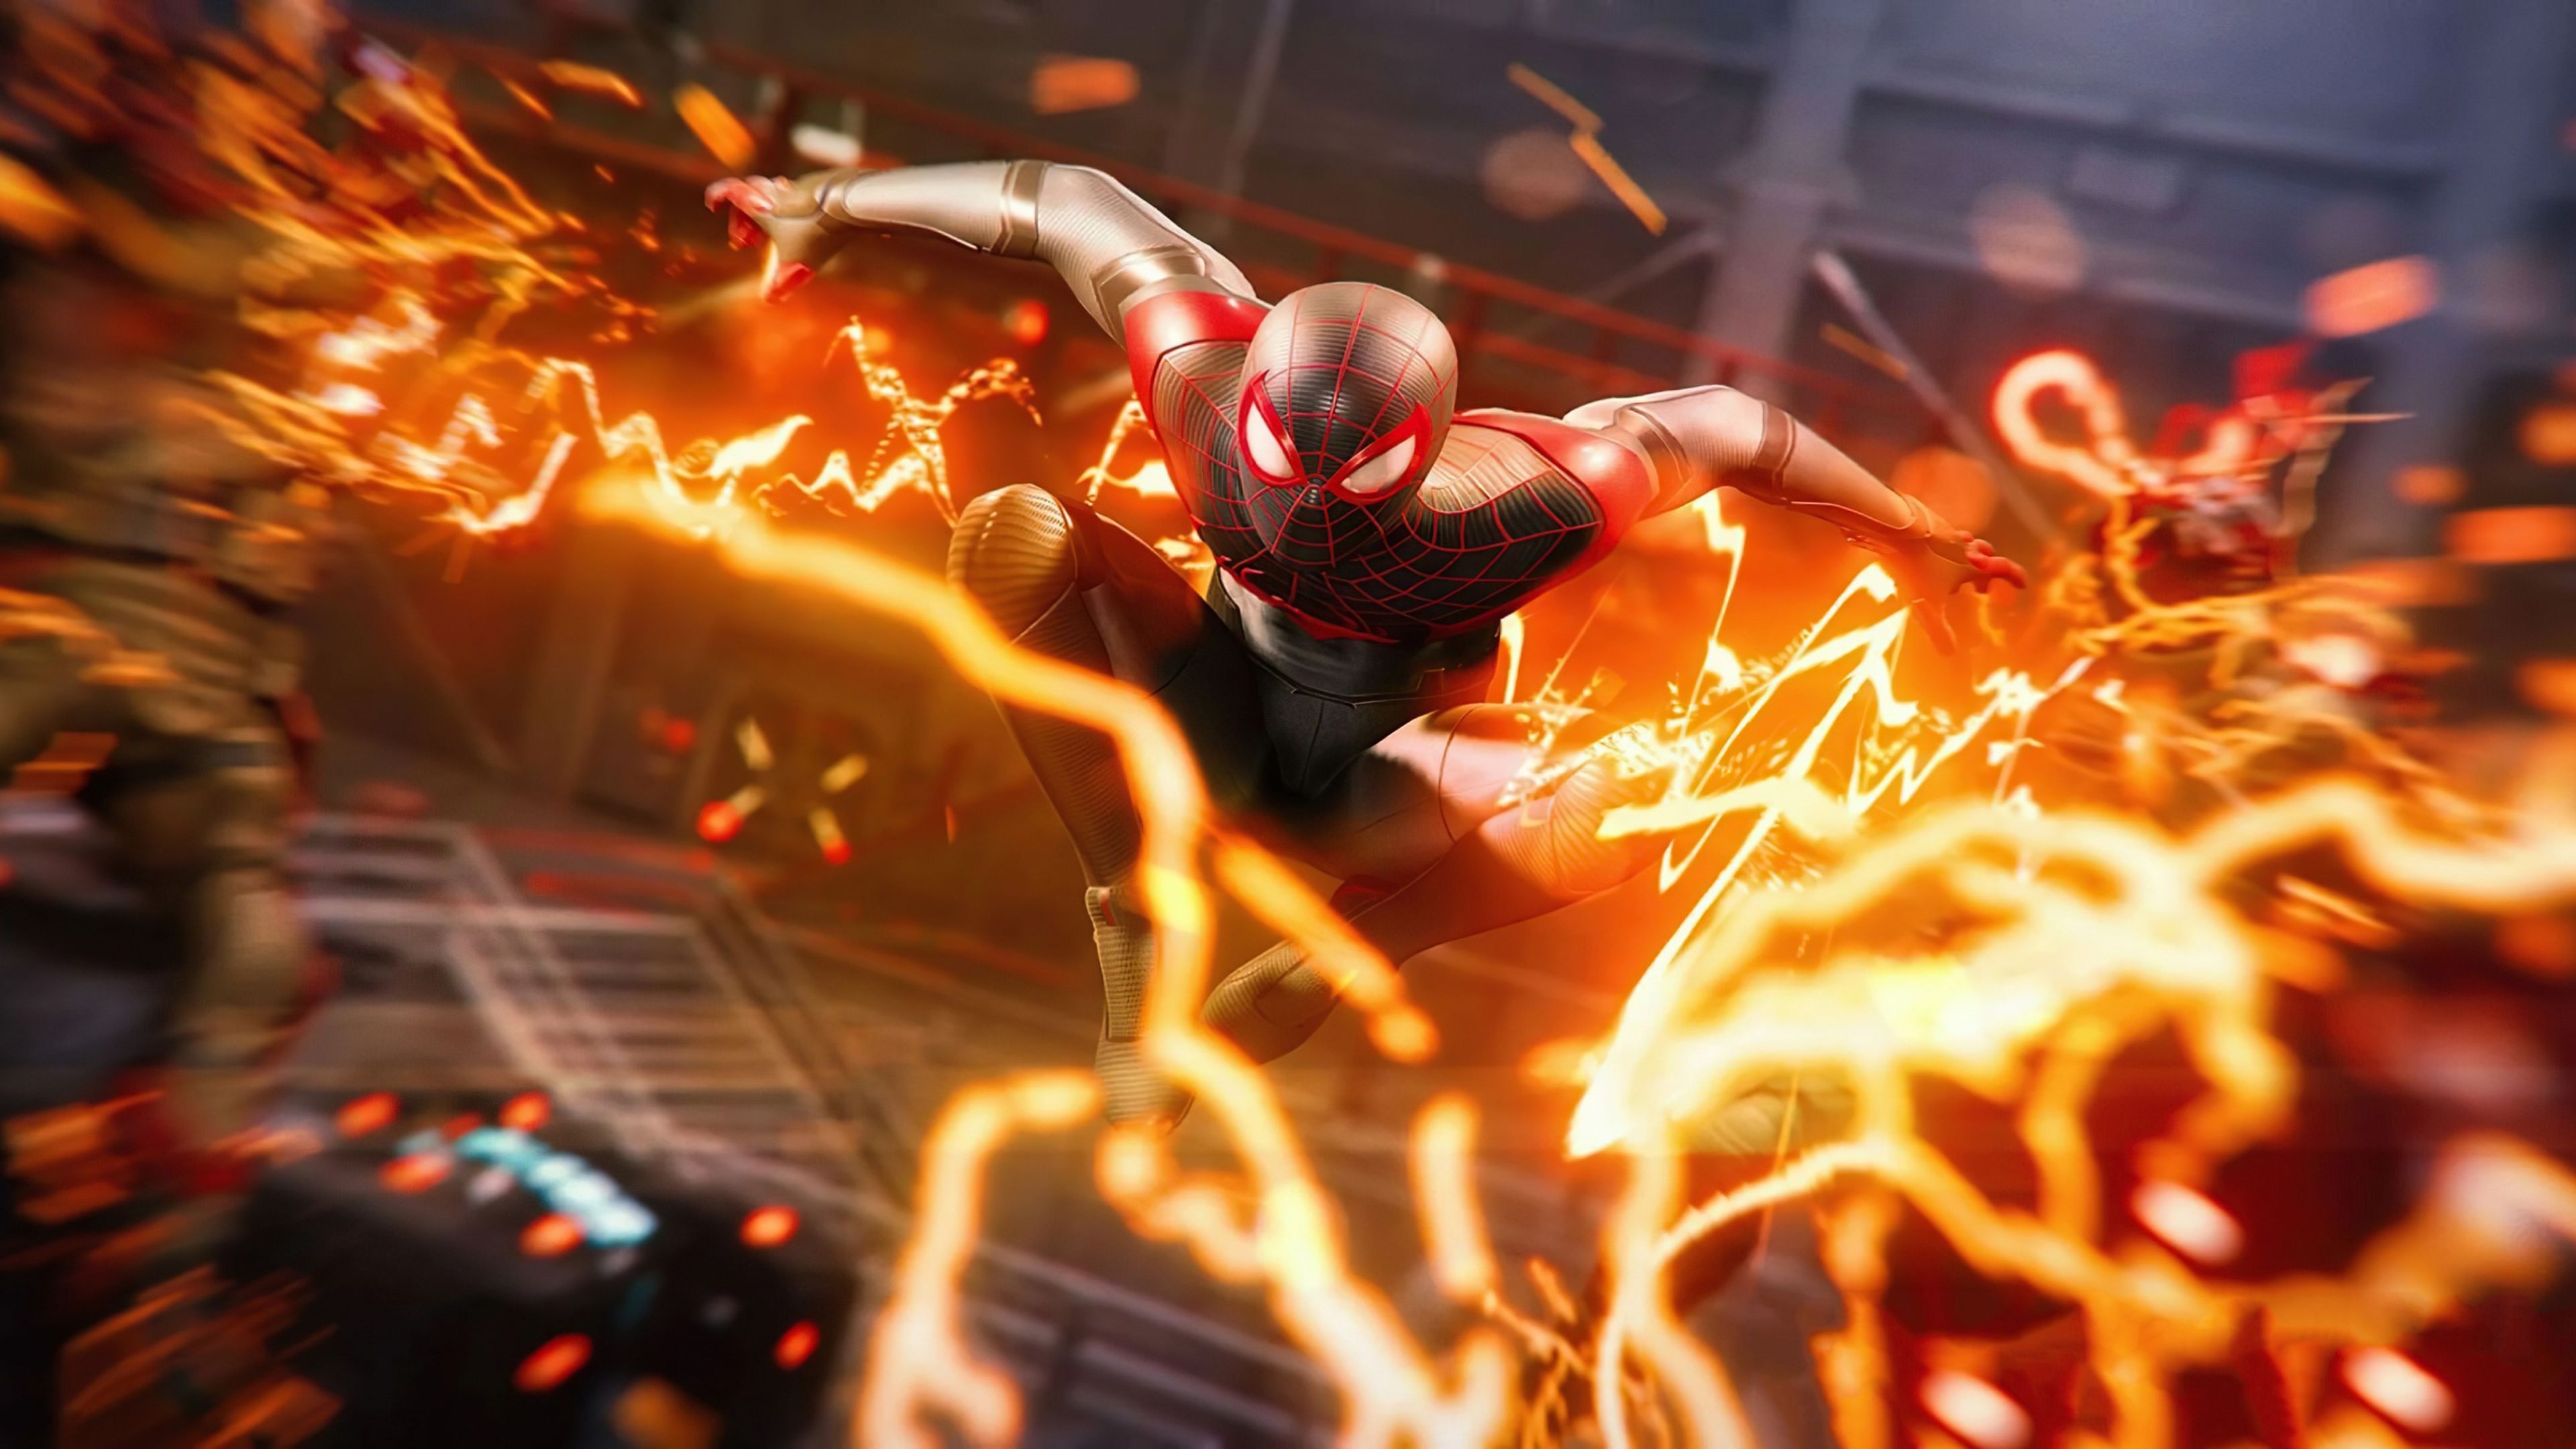 Spider-Man: Miles Morales es el mejor videojuego del Hombre Araña